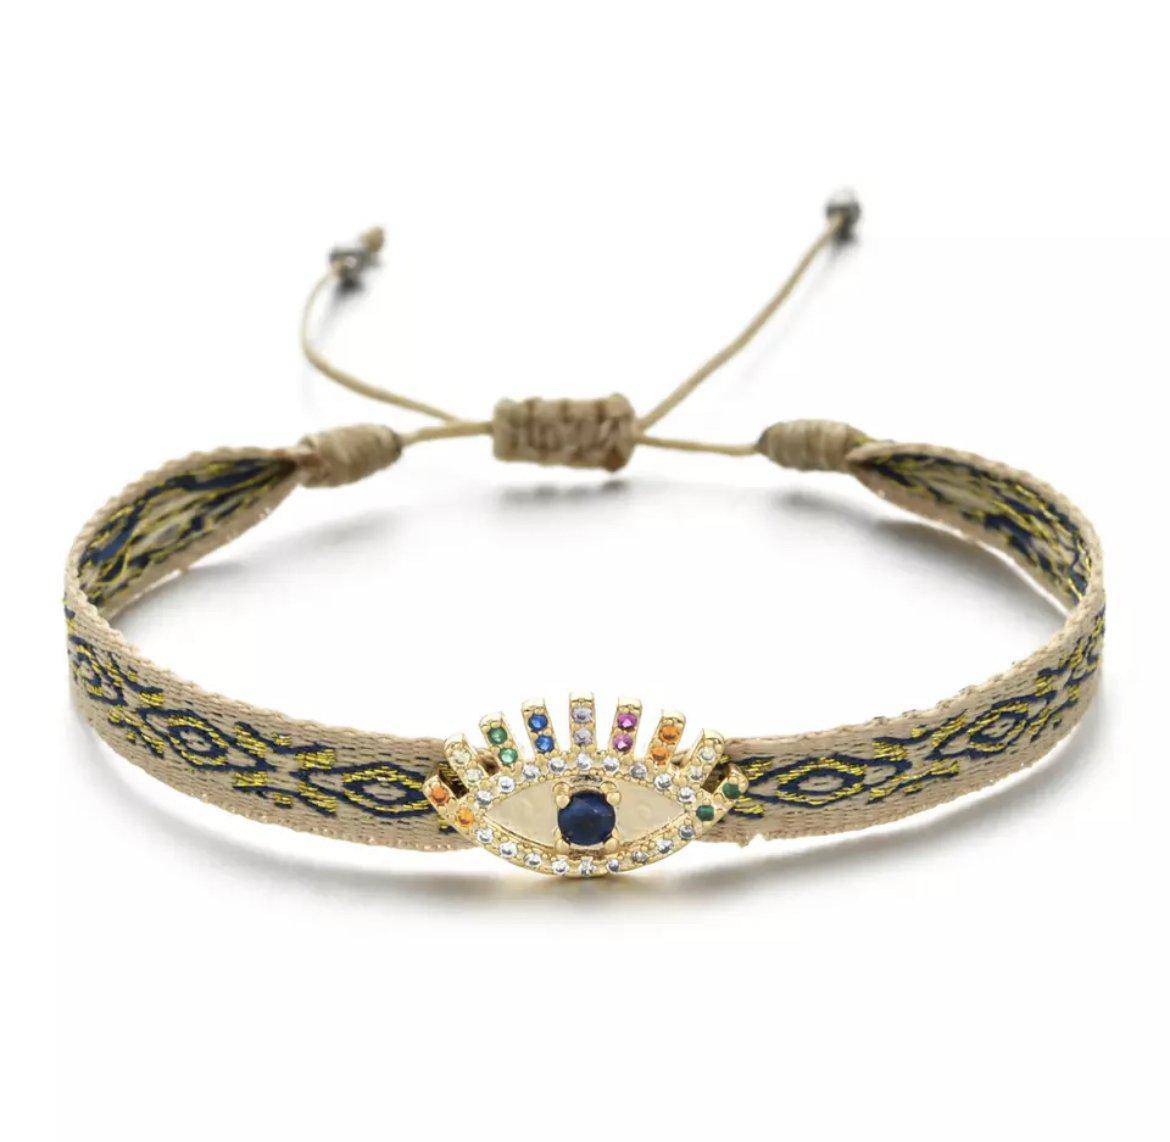 Handmade Charm Woven Bracelet - Twinkle Twinkle Little One